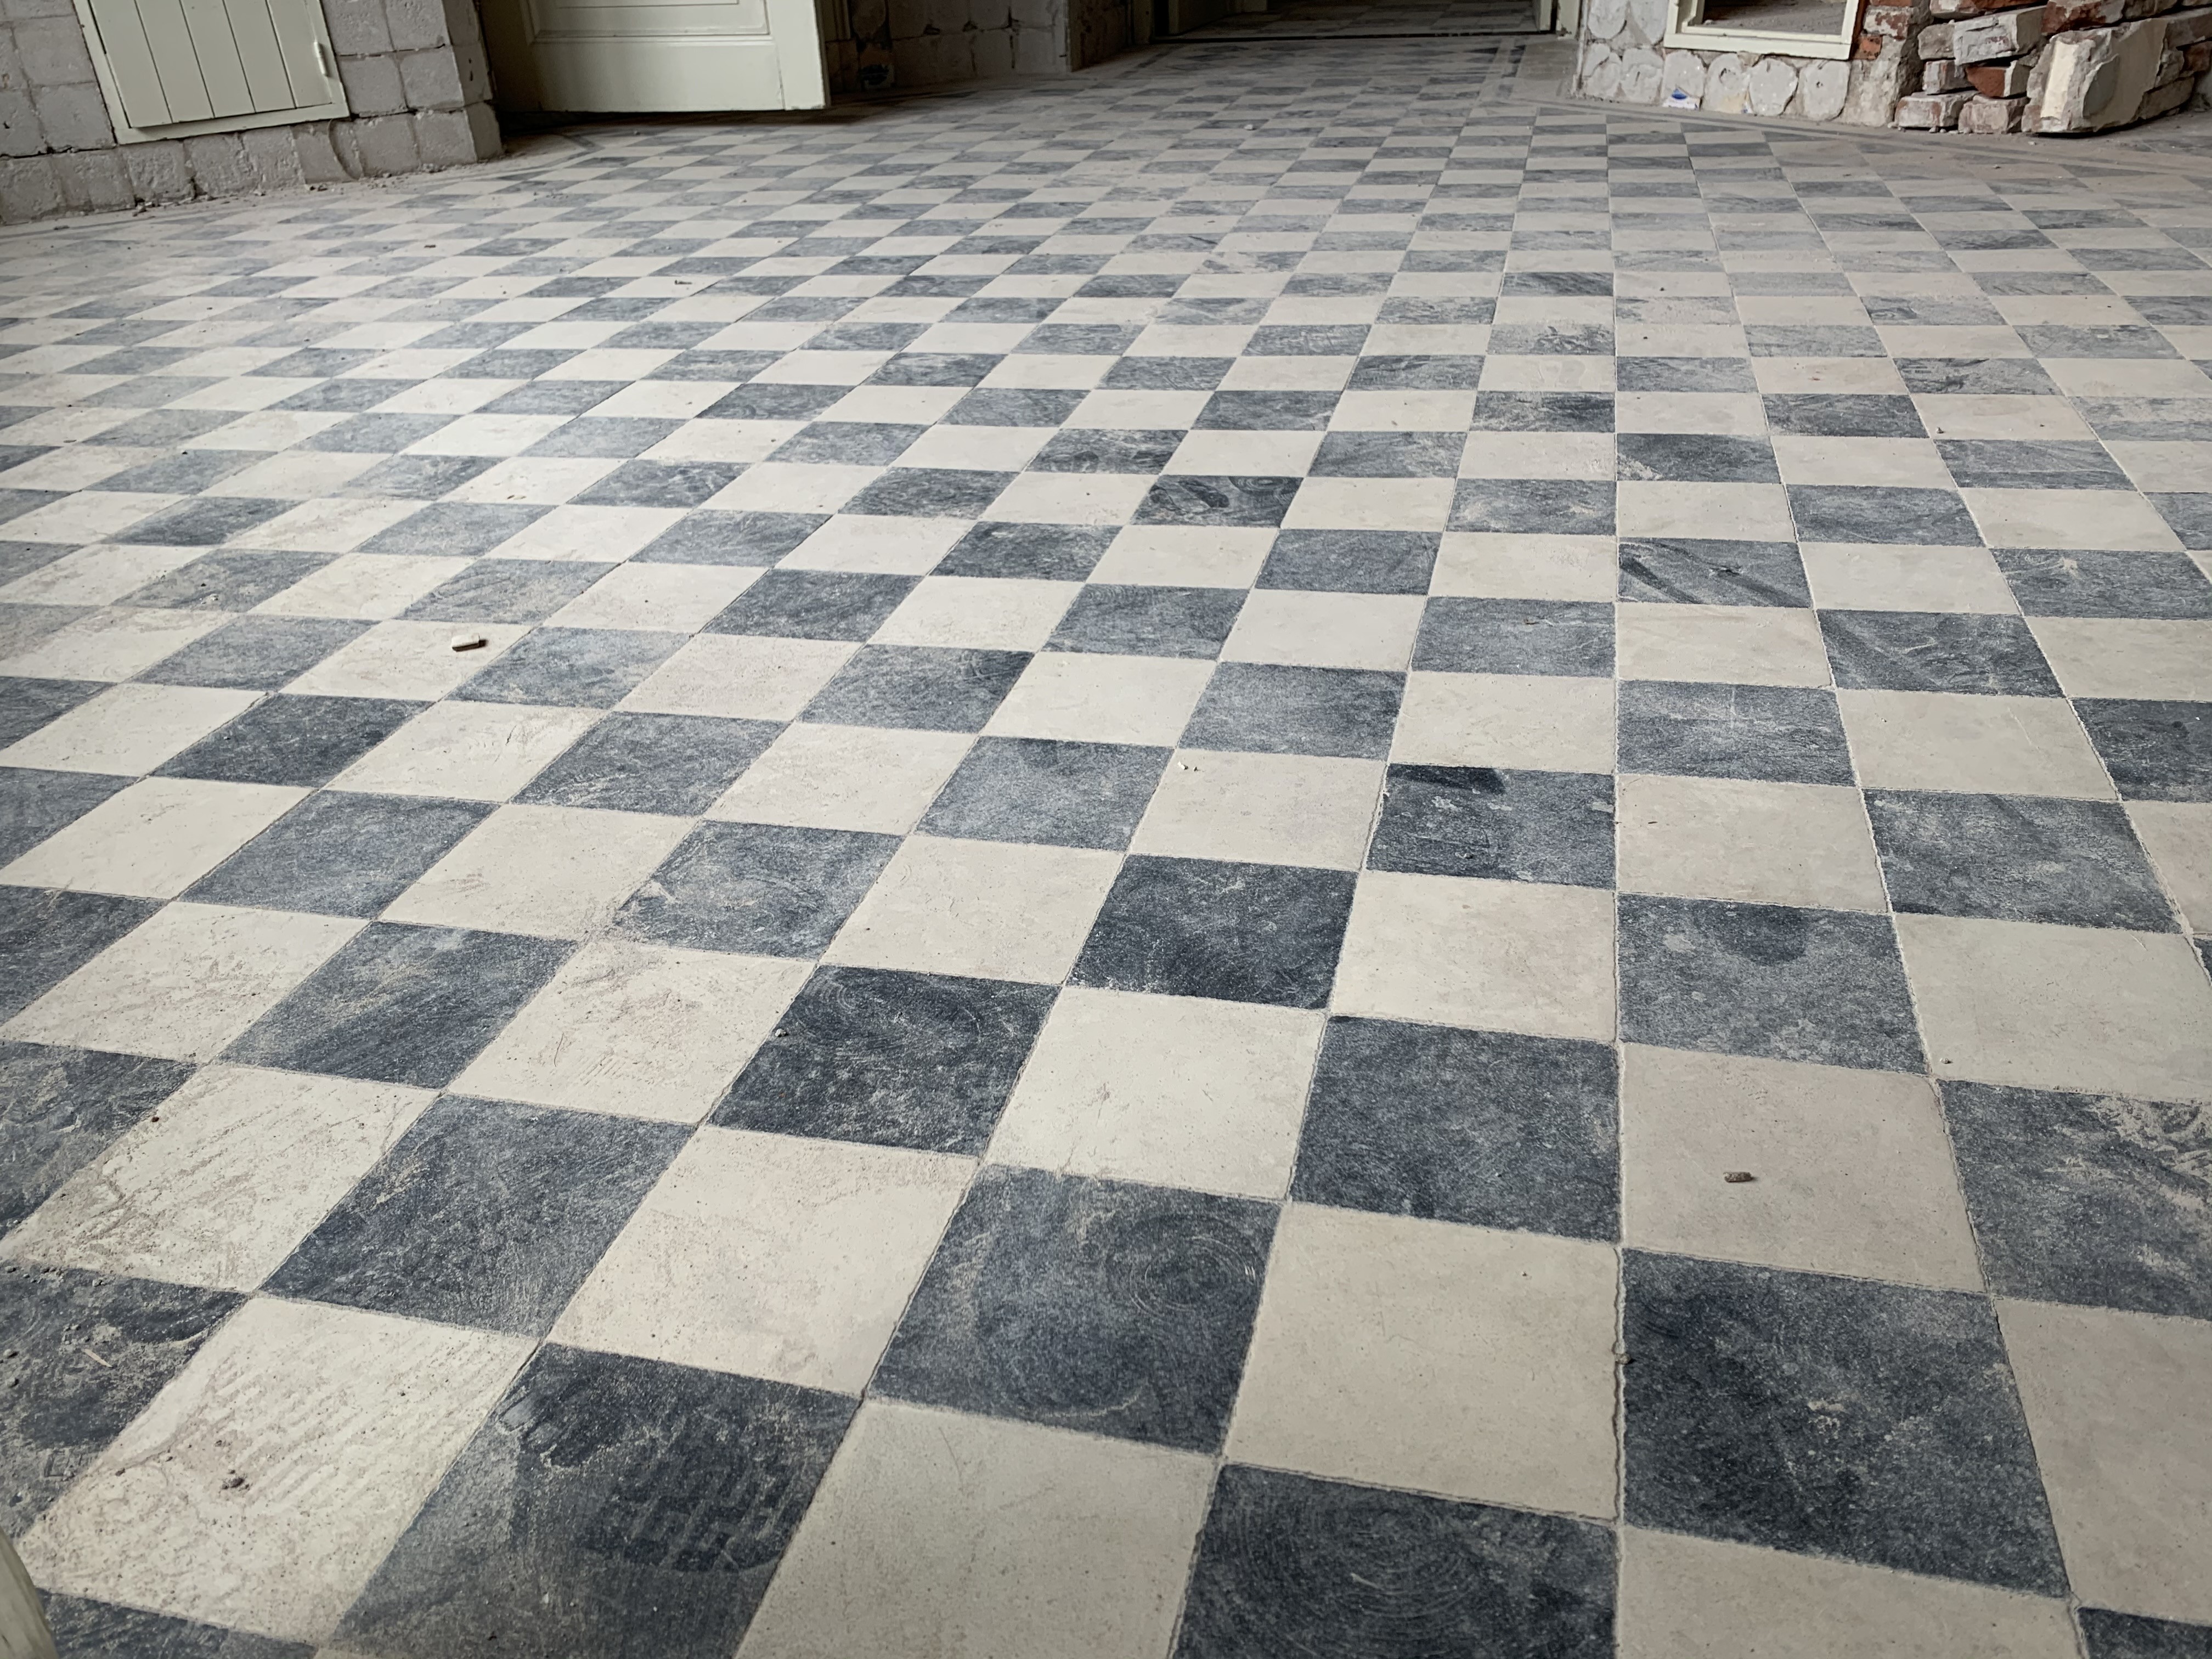 sneeuw Leeuw Monopoly Zwart wit vloertegels/ Black and white checkered floor tiles - Online shop